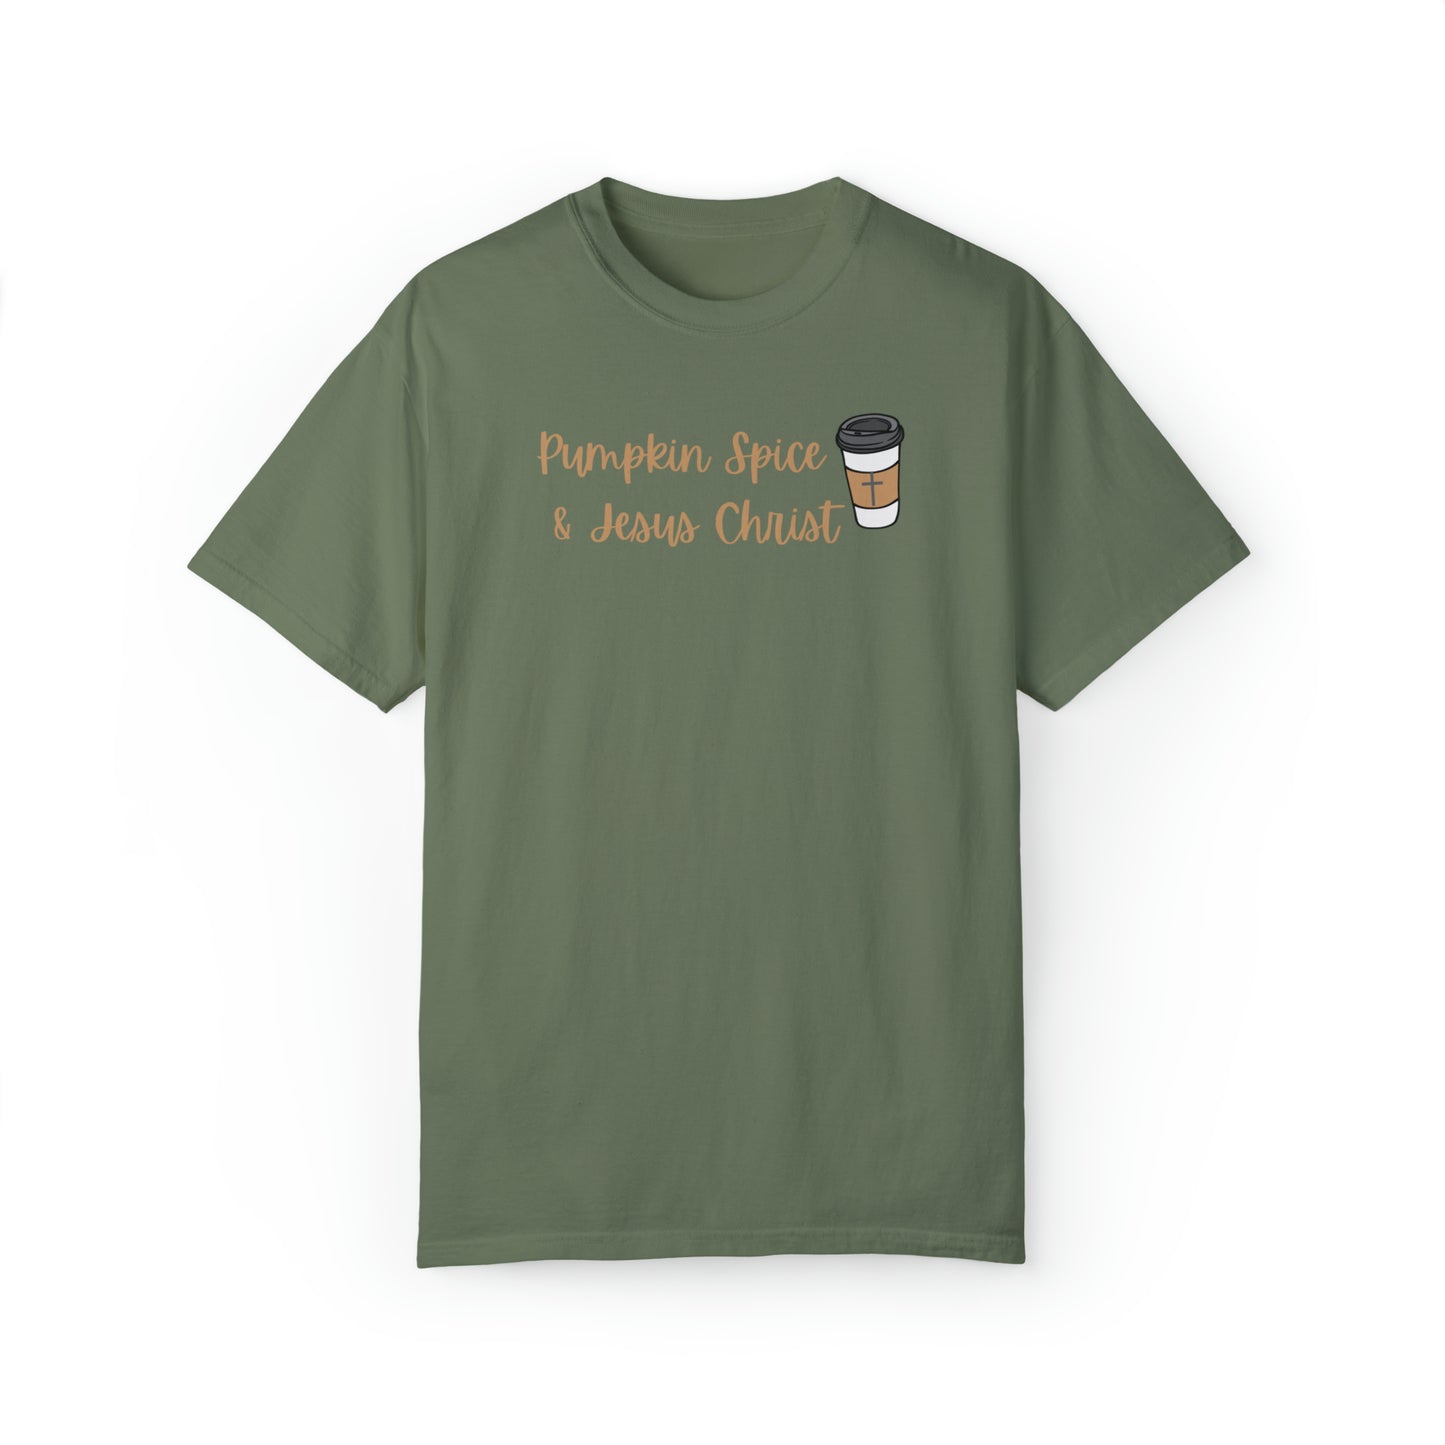 Pumpkin Spice & Jesus Christ T-Shirt, Autumn Fall Shirt, Gift for Women, Church Christian Shirt, Halloween Shirt for Women, October Birthday